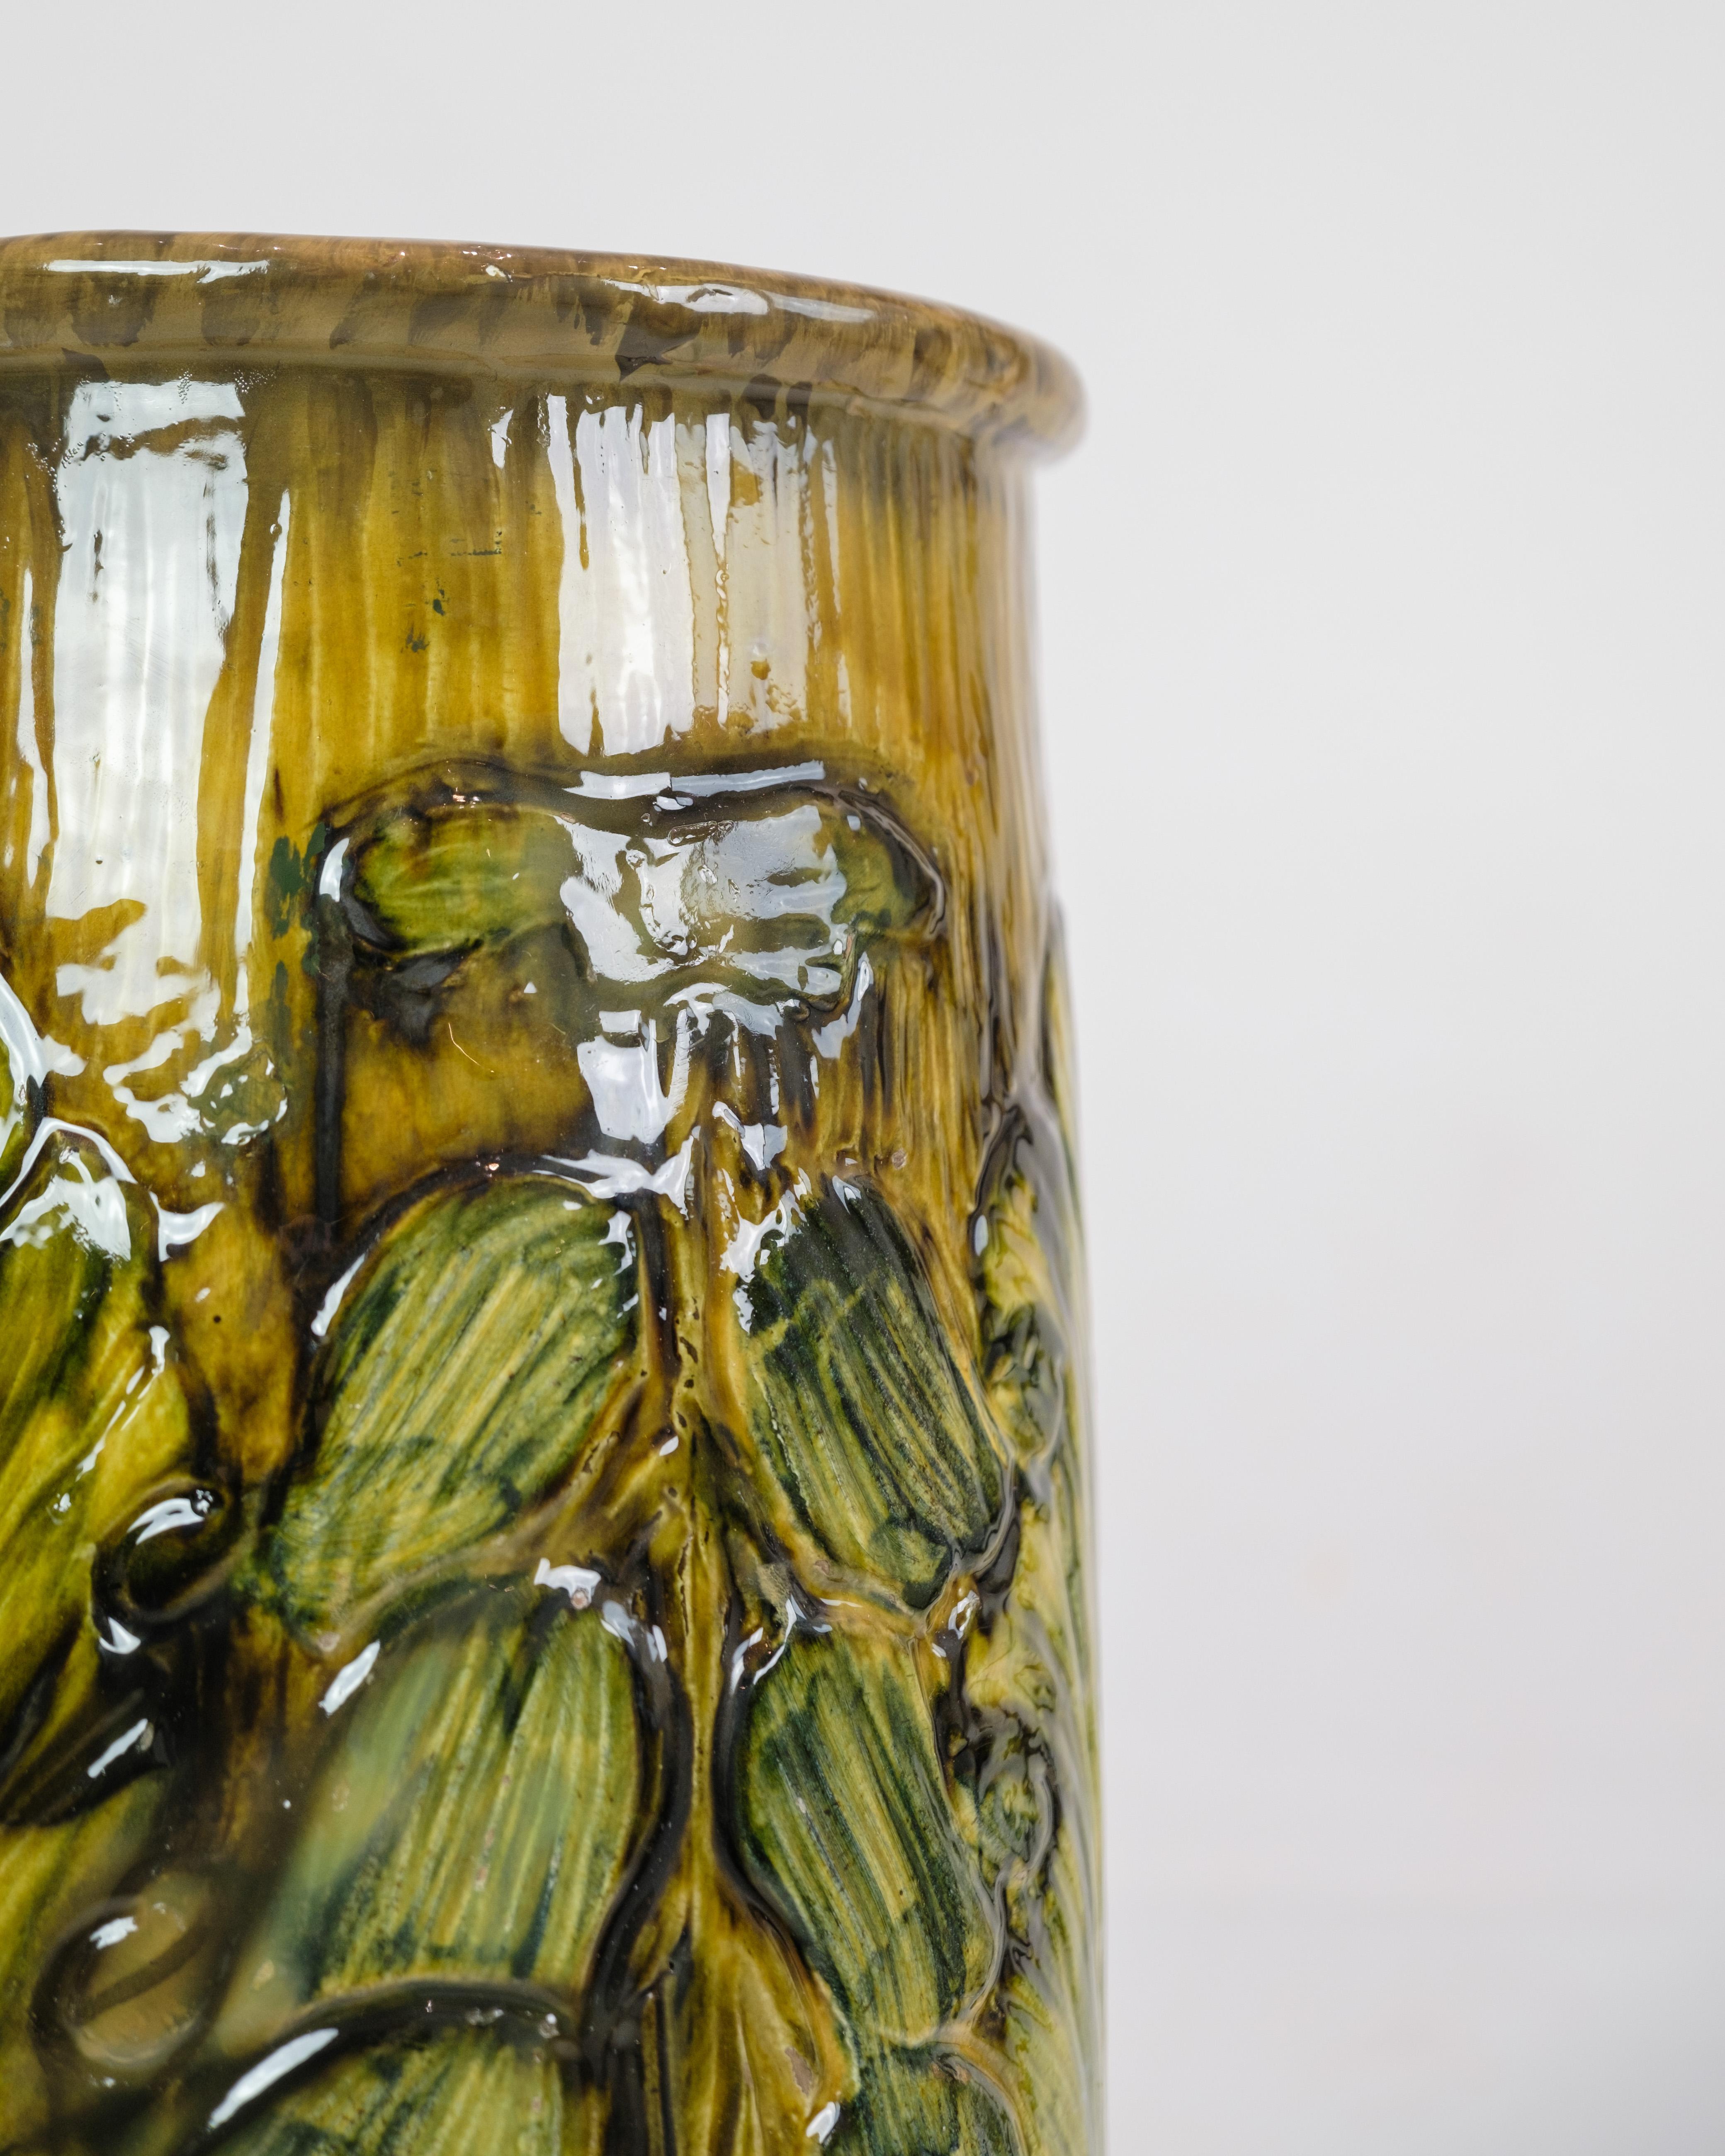 Ce grand vase de sol en céramique de Danico est une pièce remarquable datant des années 1960. Le vase, avec son mélange de couleurs jaunes et verdâtres, dégage une esthétique unique et vivante caractéristique de cette époque.

Le bol en céramique